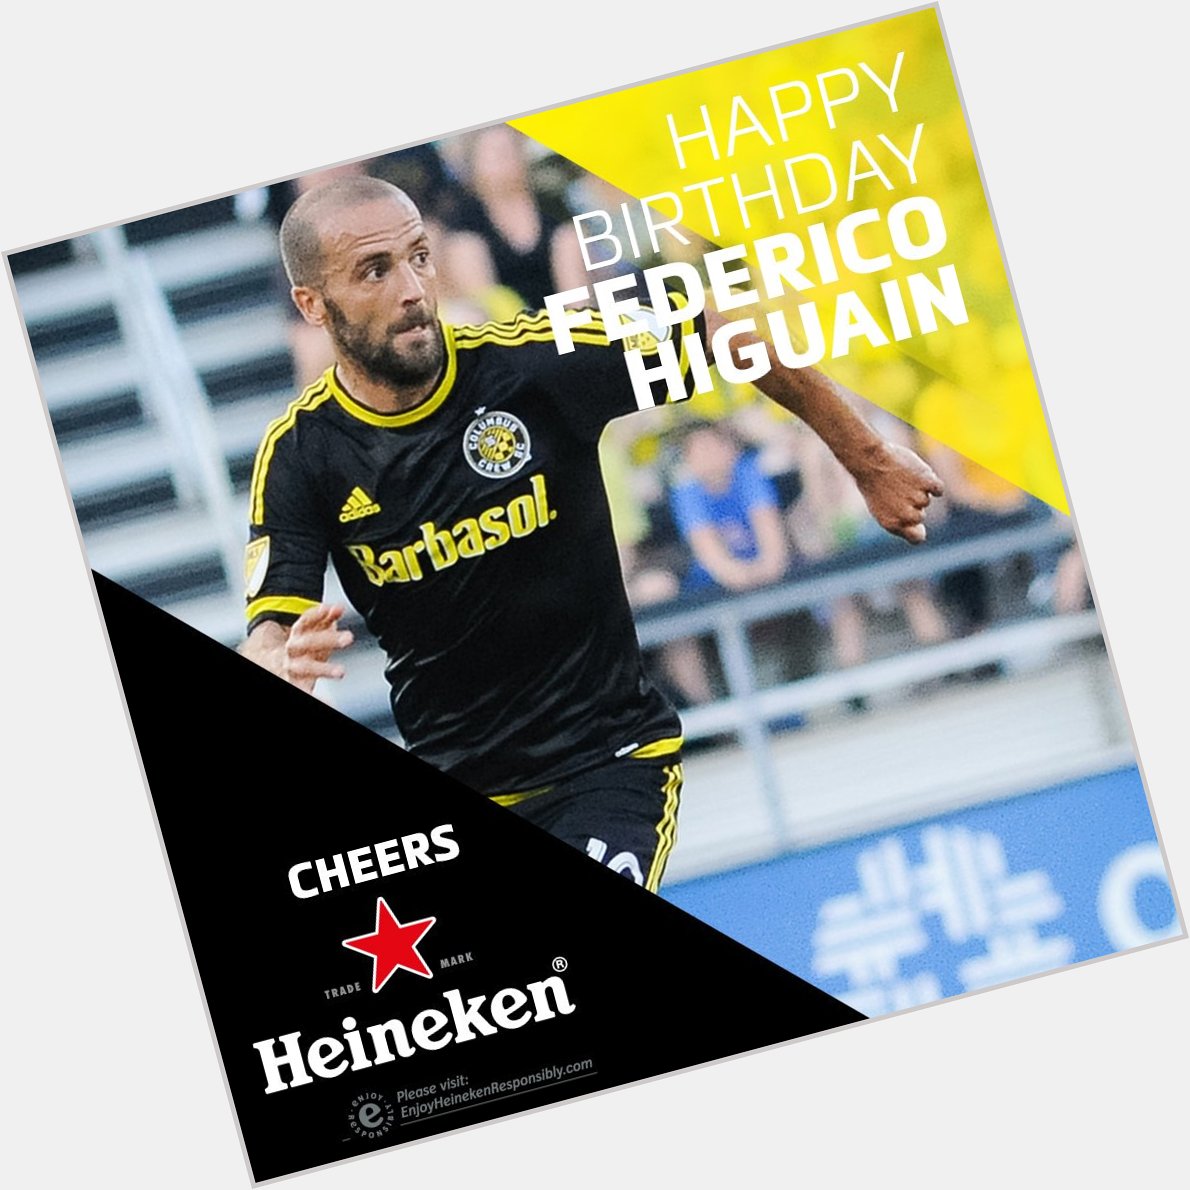 Bugün Federico Higuain\in do um günü¹ Happy birthday Federico! 